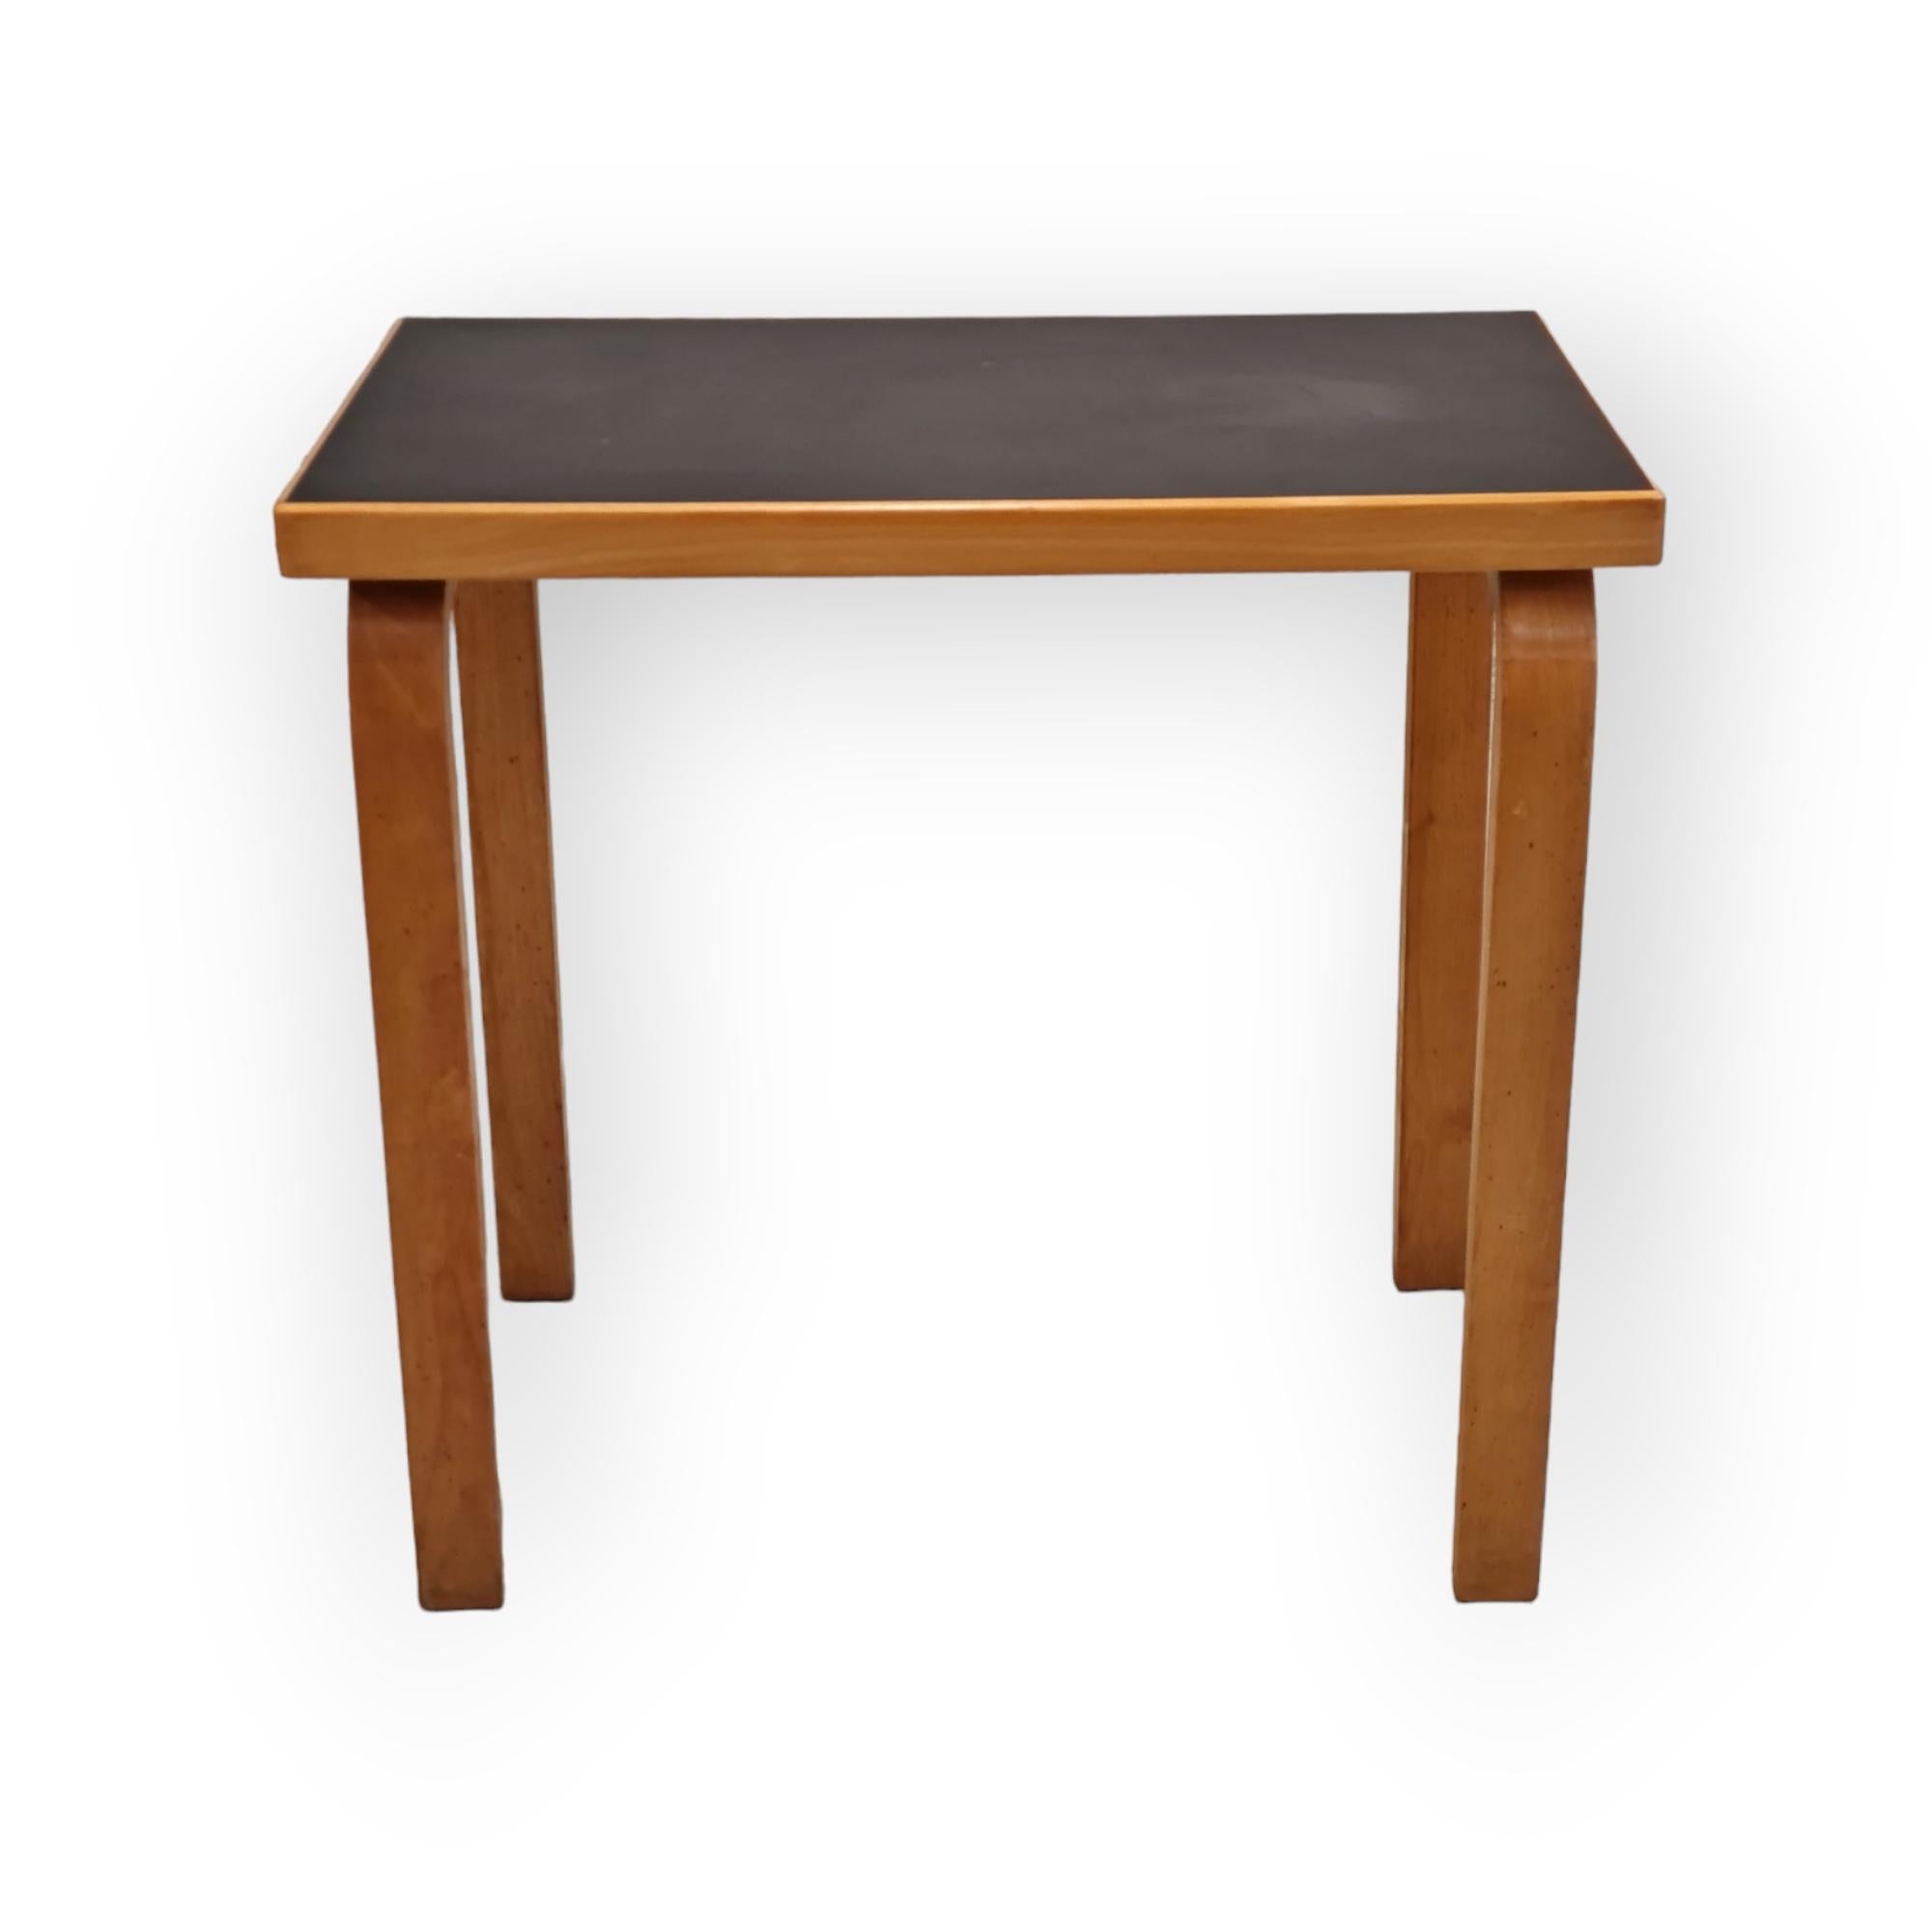 Scandinavian Modern Alvar aalto Side Table Model 86 for Artek, 1930s For Sale